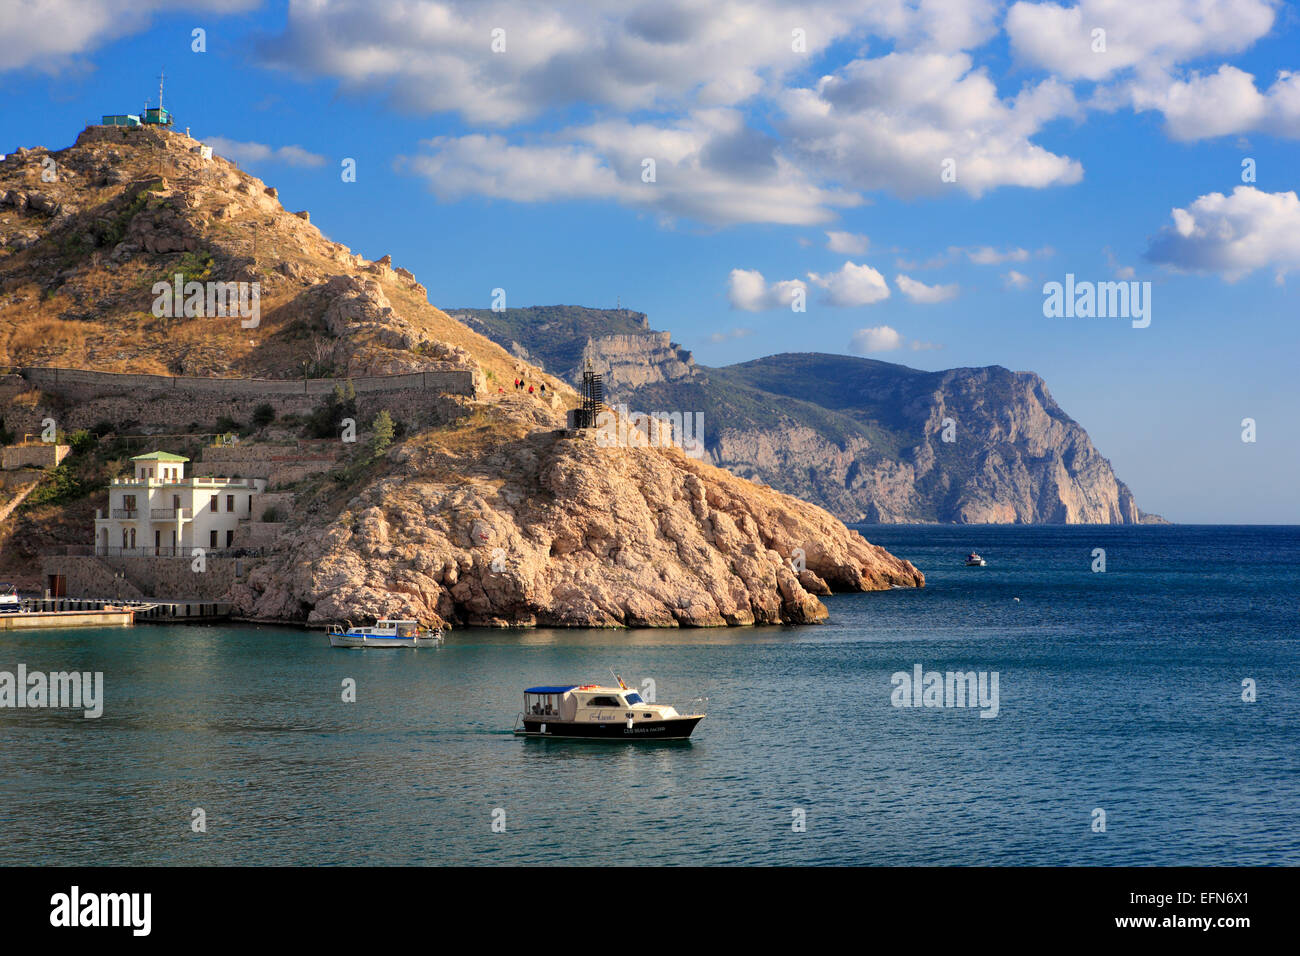 Balaklava bay, near Sevastopol, Crimea, Ukraine Stock Photo